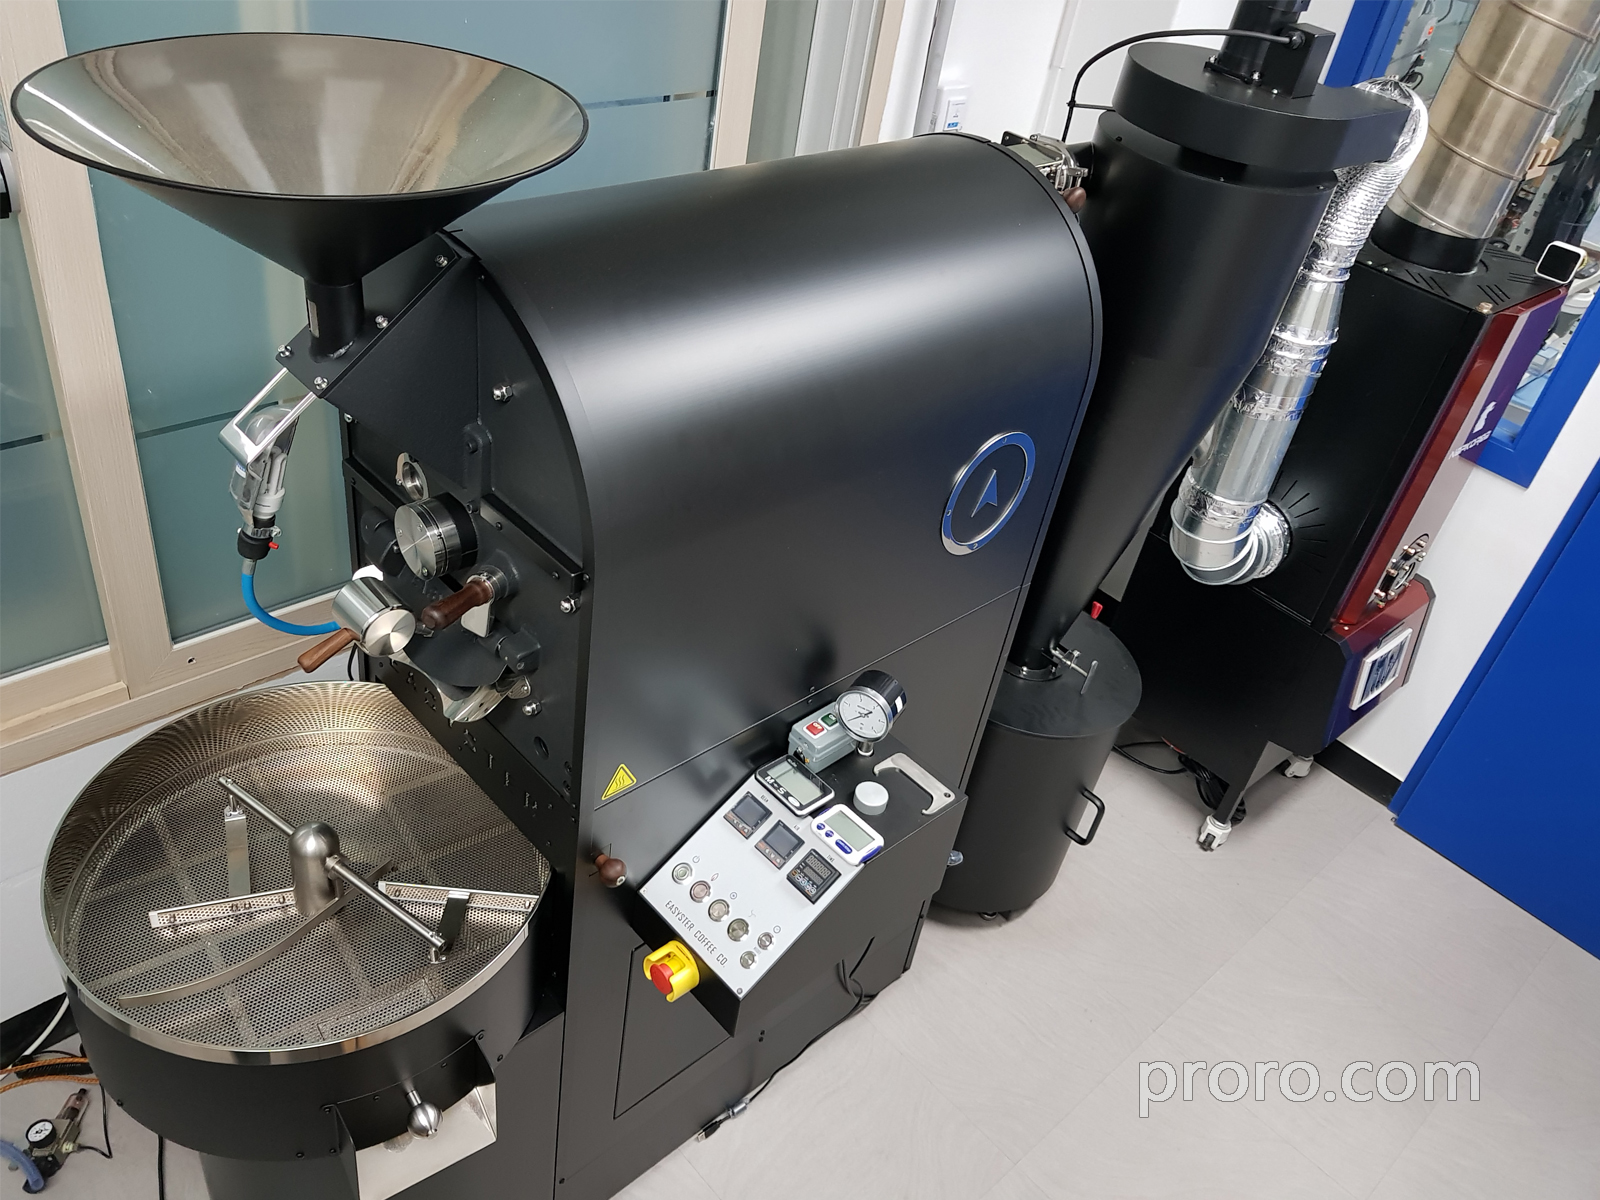 EASYSTER 咖啡烘焙机 咖啡烘焙烟味处理 后燃机 安装案例 - SSH Bean咖啡工作室。